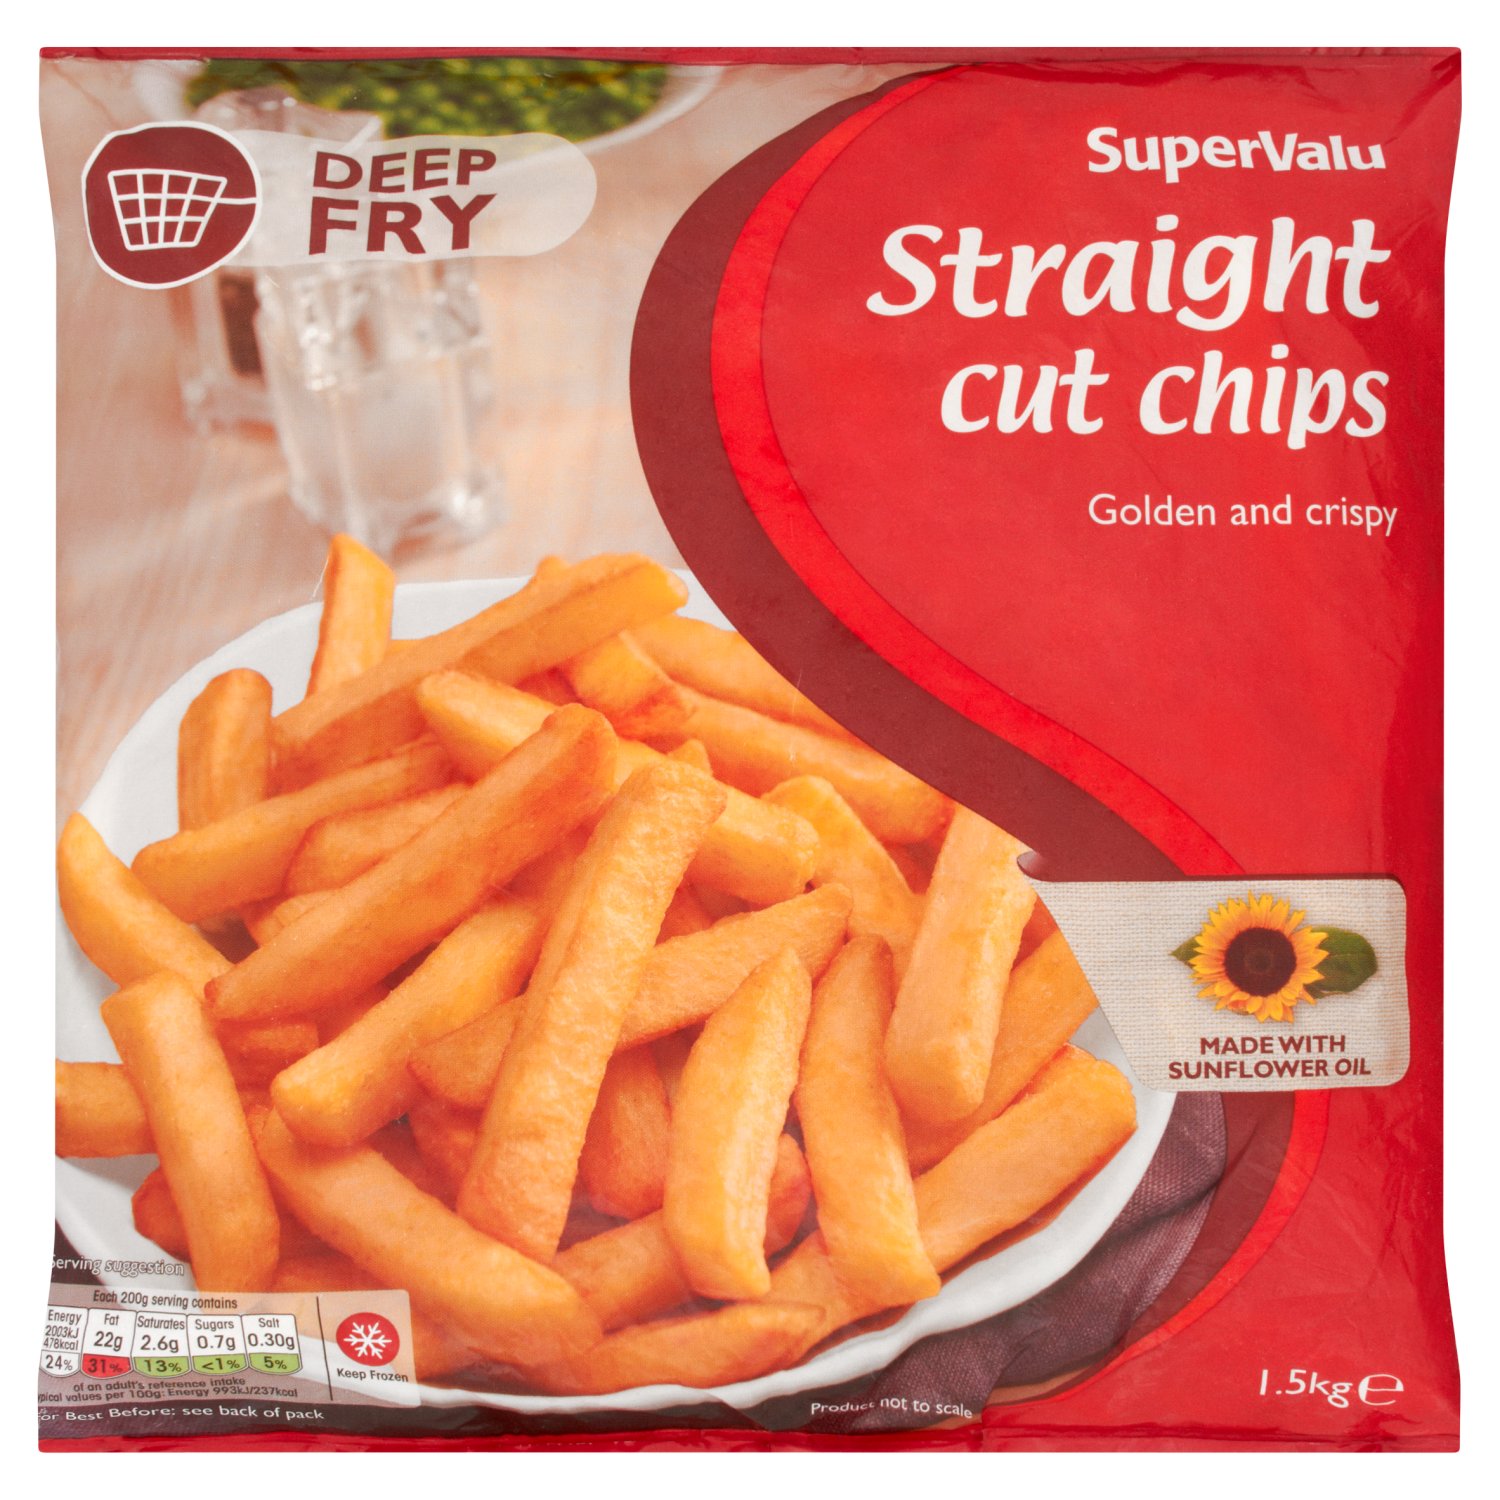 SuperValu Straight Cut Chips (1.5 kg)